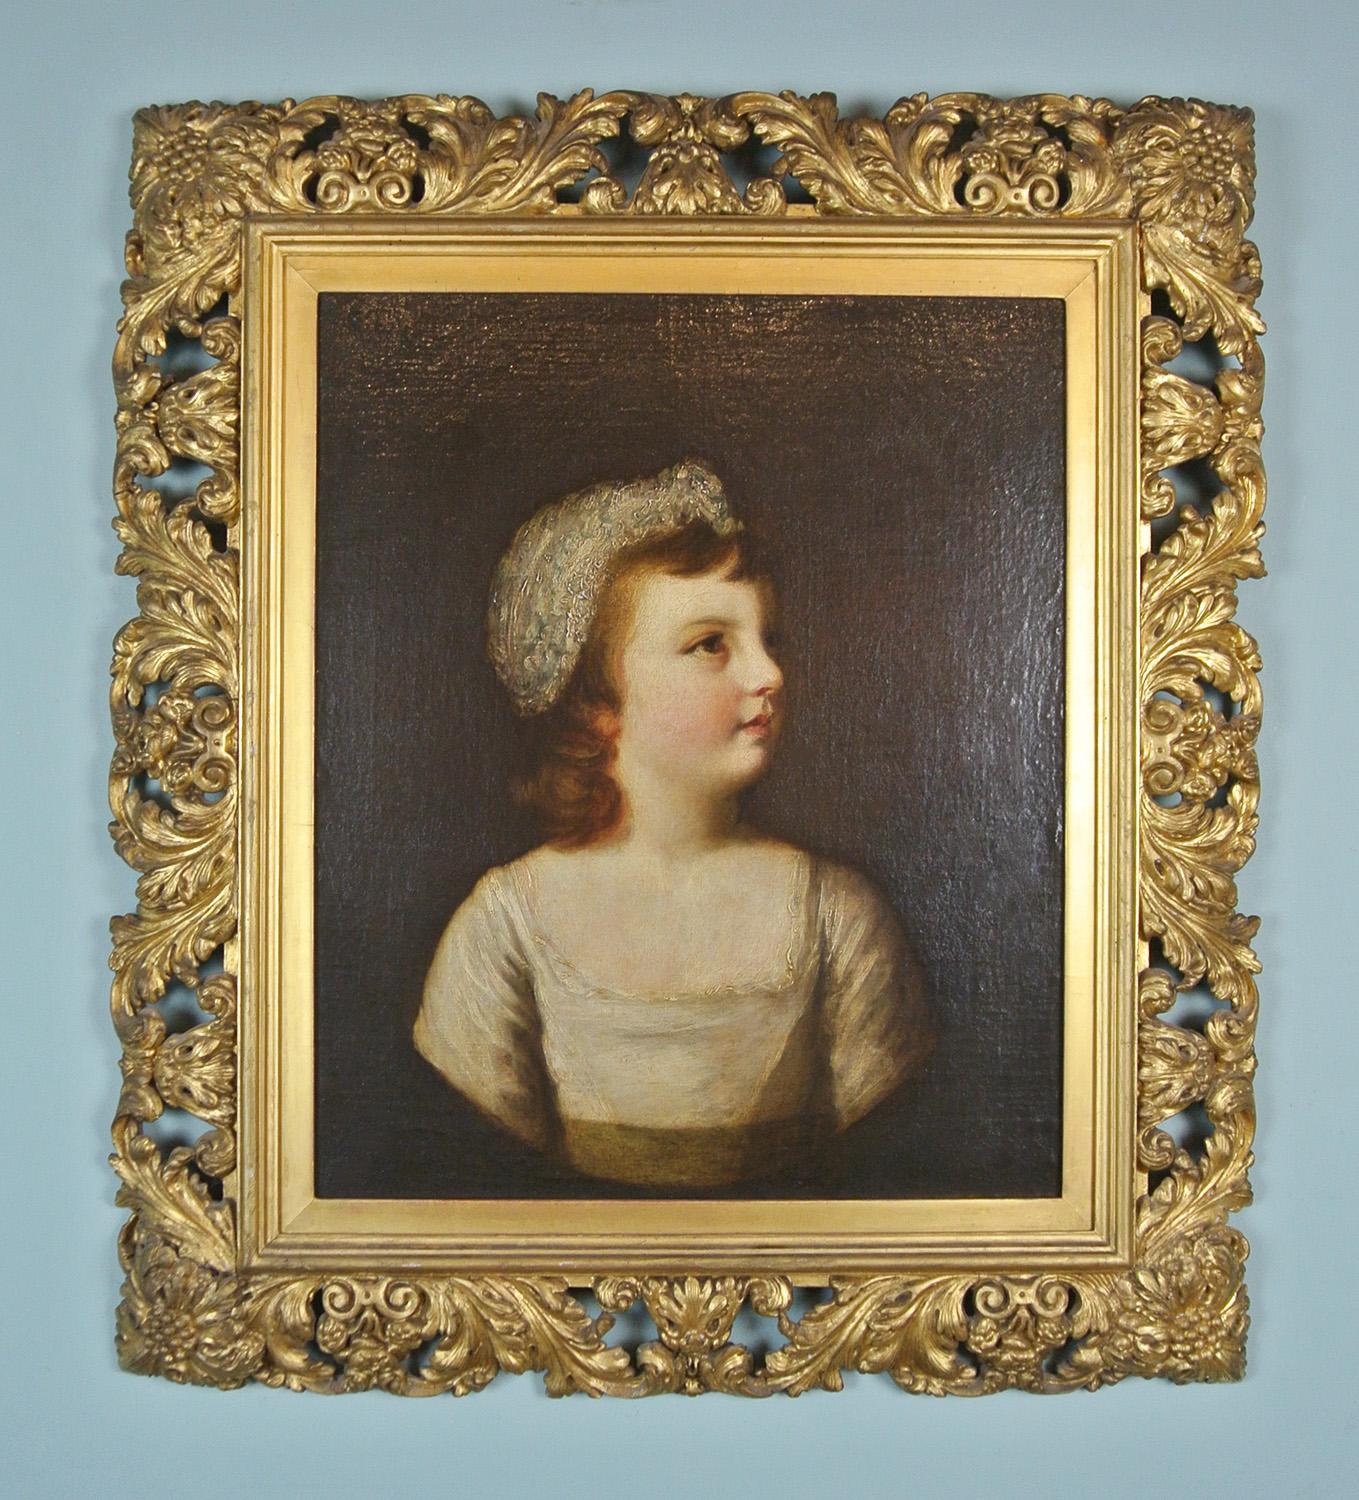 Sir Joshua Reynolds a peint Lady Forrester - née Lady Catherine Mary Manners, fille de la duchesse de Rutland - à au moins quatre reprises lorsqu'elle était enfant et plus tard dans sa vie.

Son visage est peint de manière particulièrement